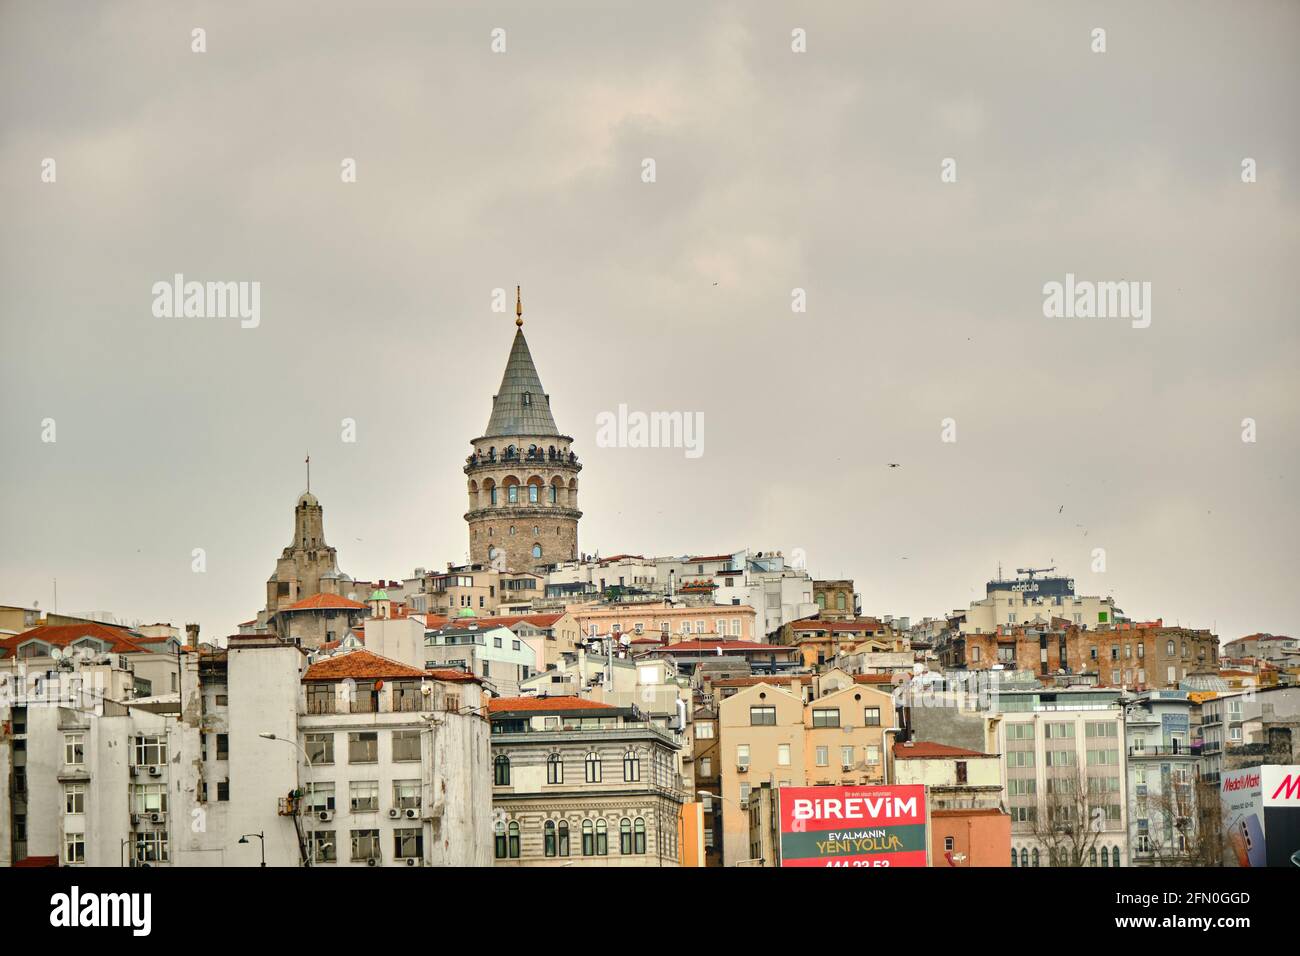 Der berühmte galata-Turm von istanbul wurde vom istanbuler bosporus fotografiert. Galata-Turm an bewölktem Himmel und regnerischen Tagen Stockfoto